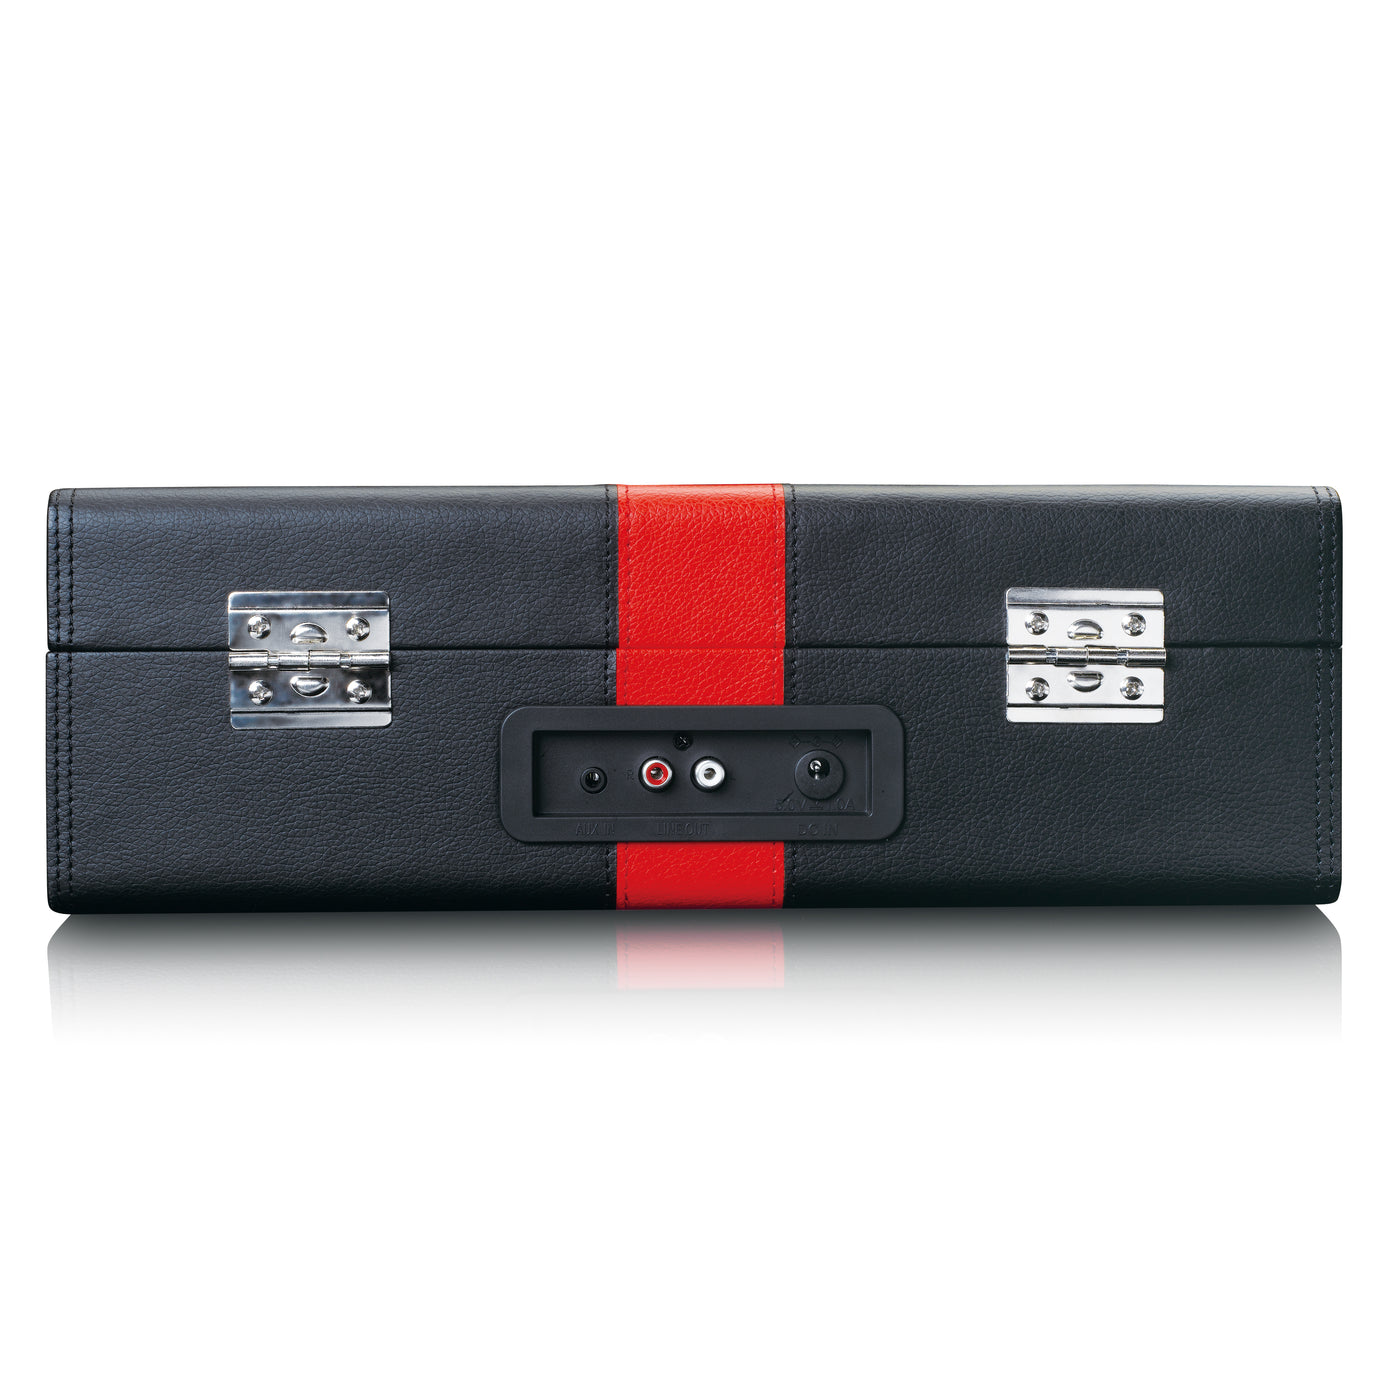 Classic Phono TT-110BKRD - Platine vinyle Bluetooth® avec haut-parleurs intégrés - Noir Rouge